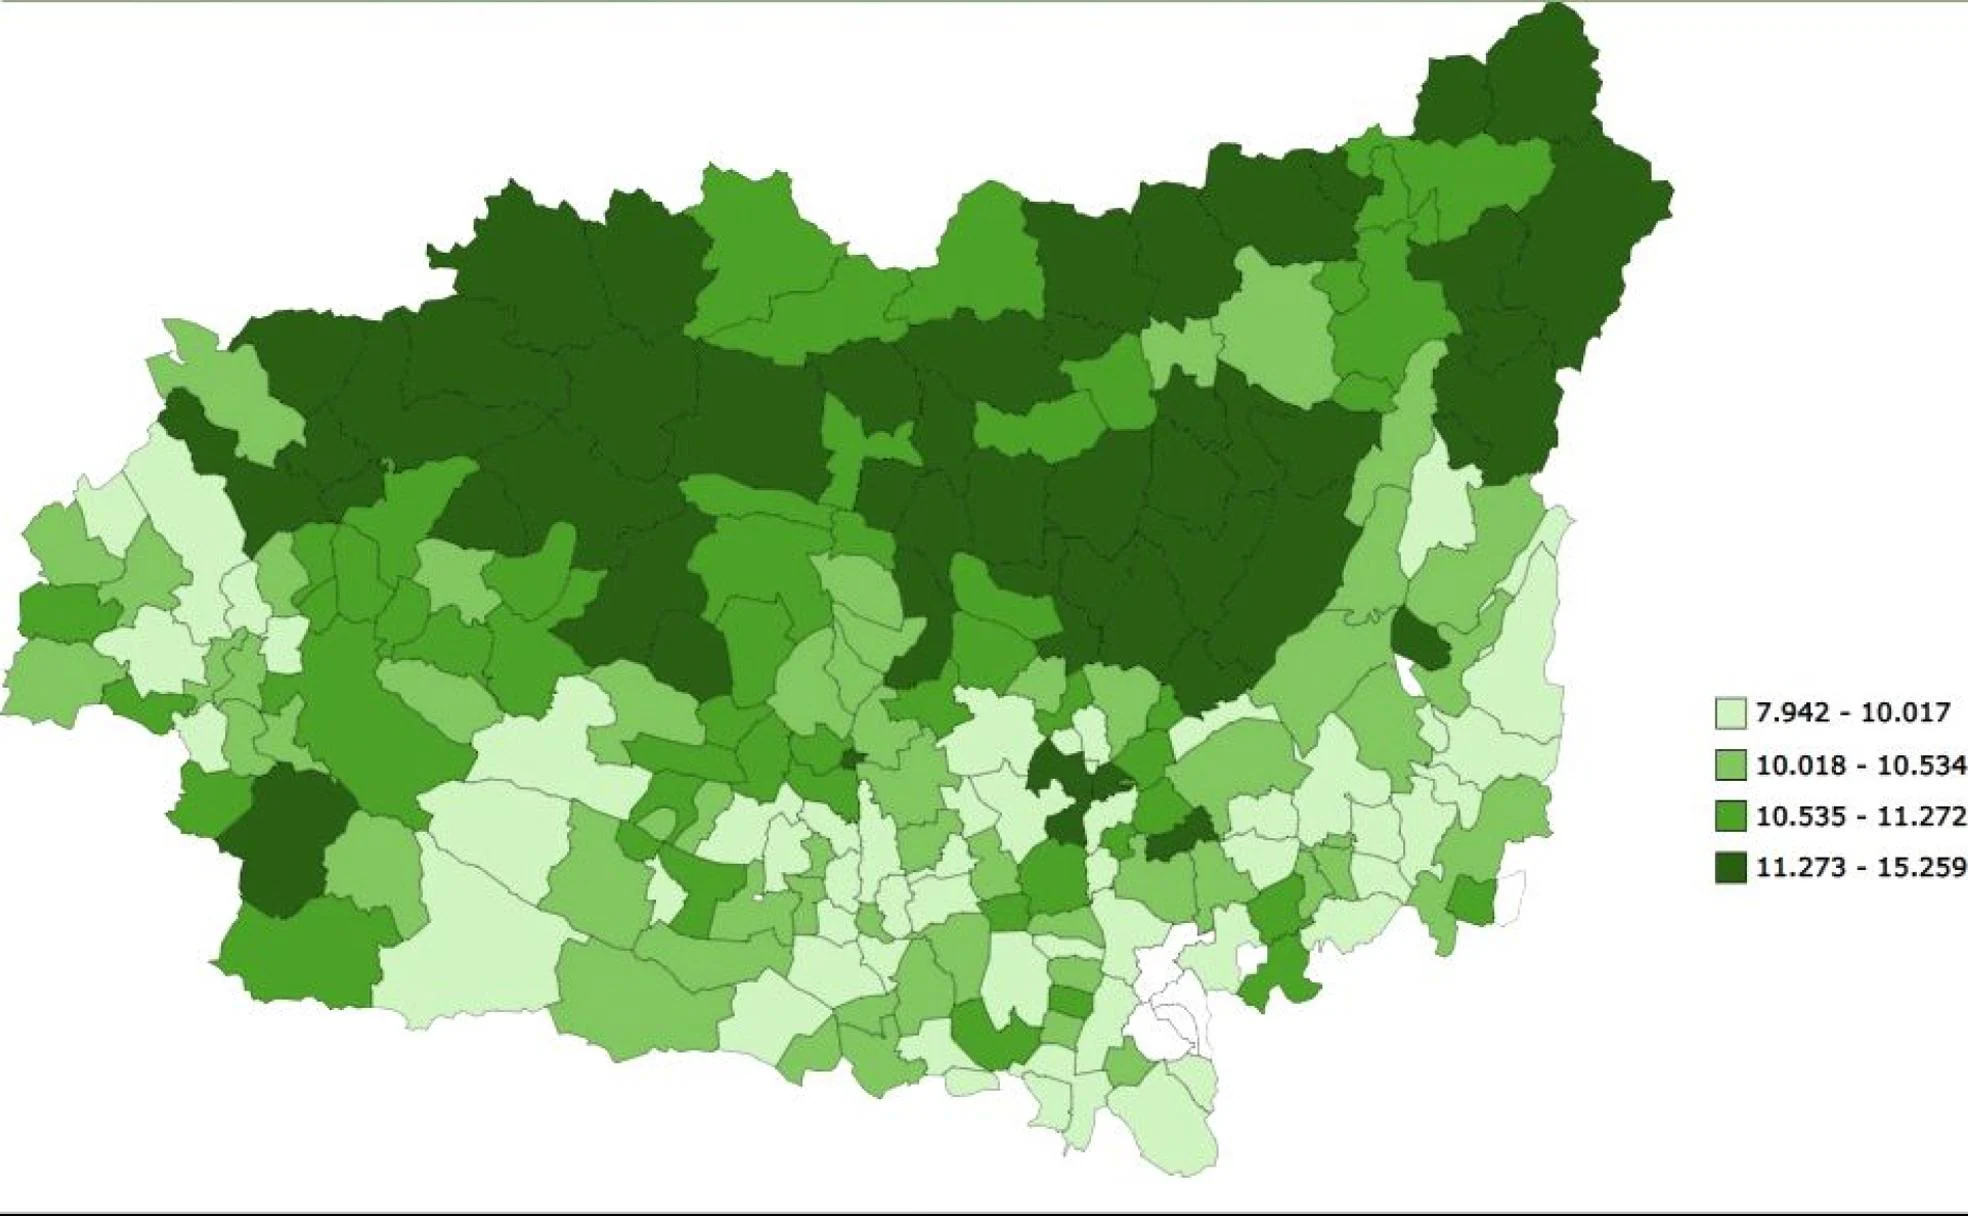 Mapa de rentas en la provincia de León en el que se aprecia la diferencia por situación geográfica.